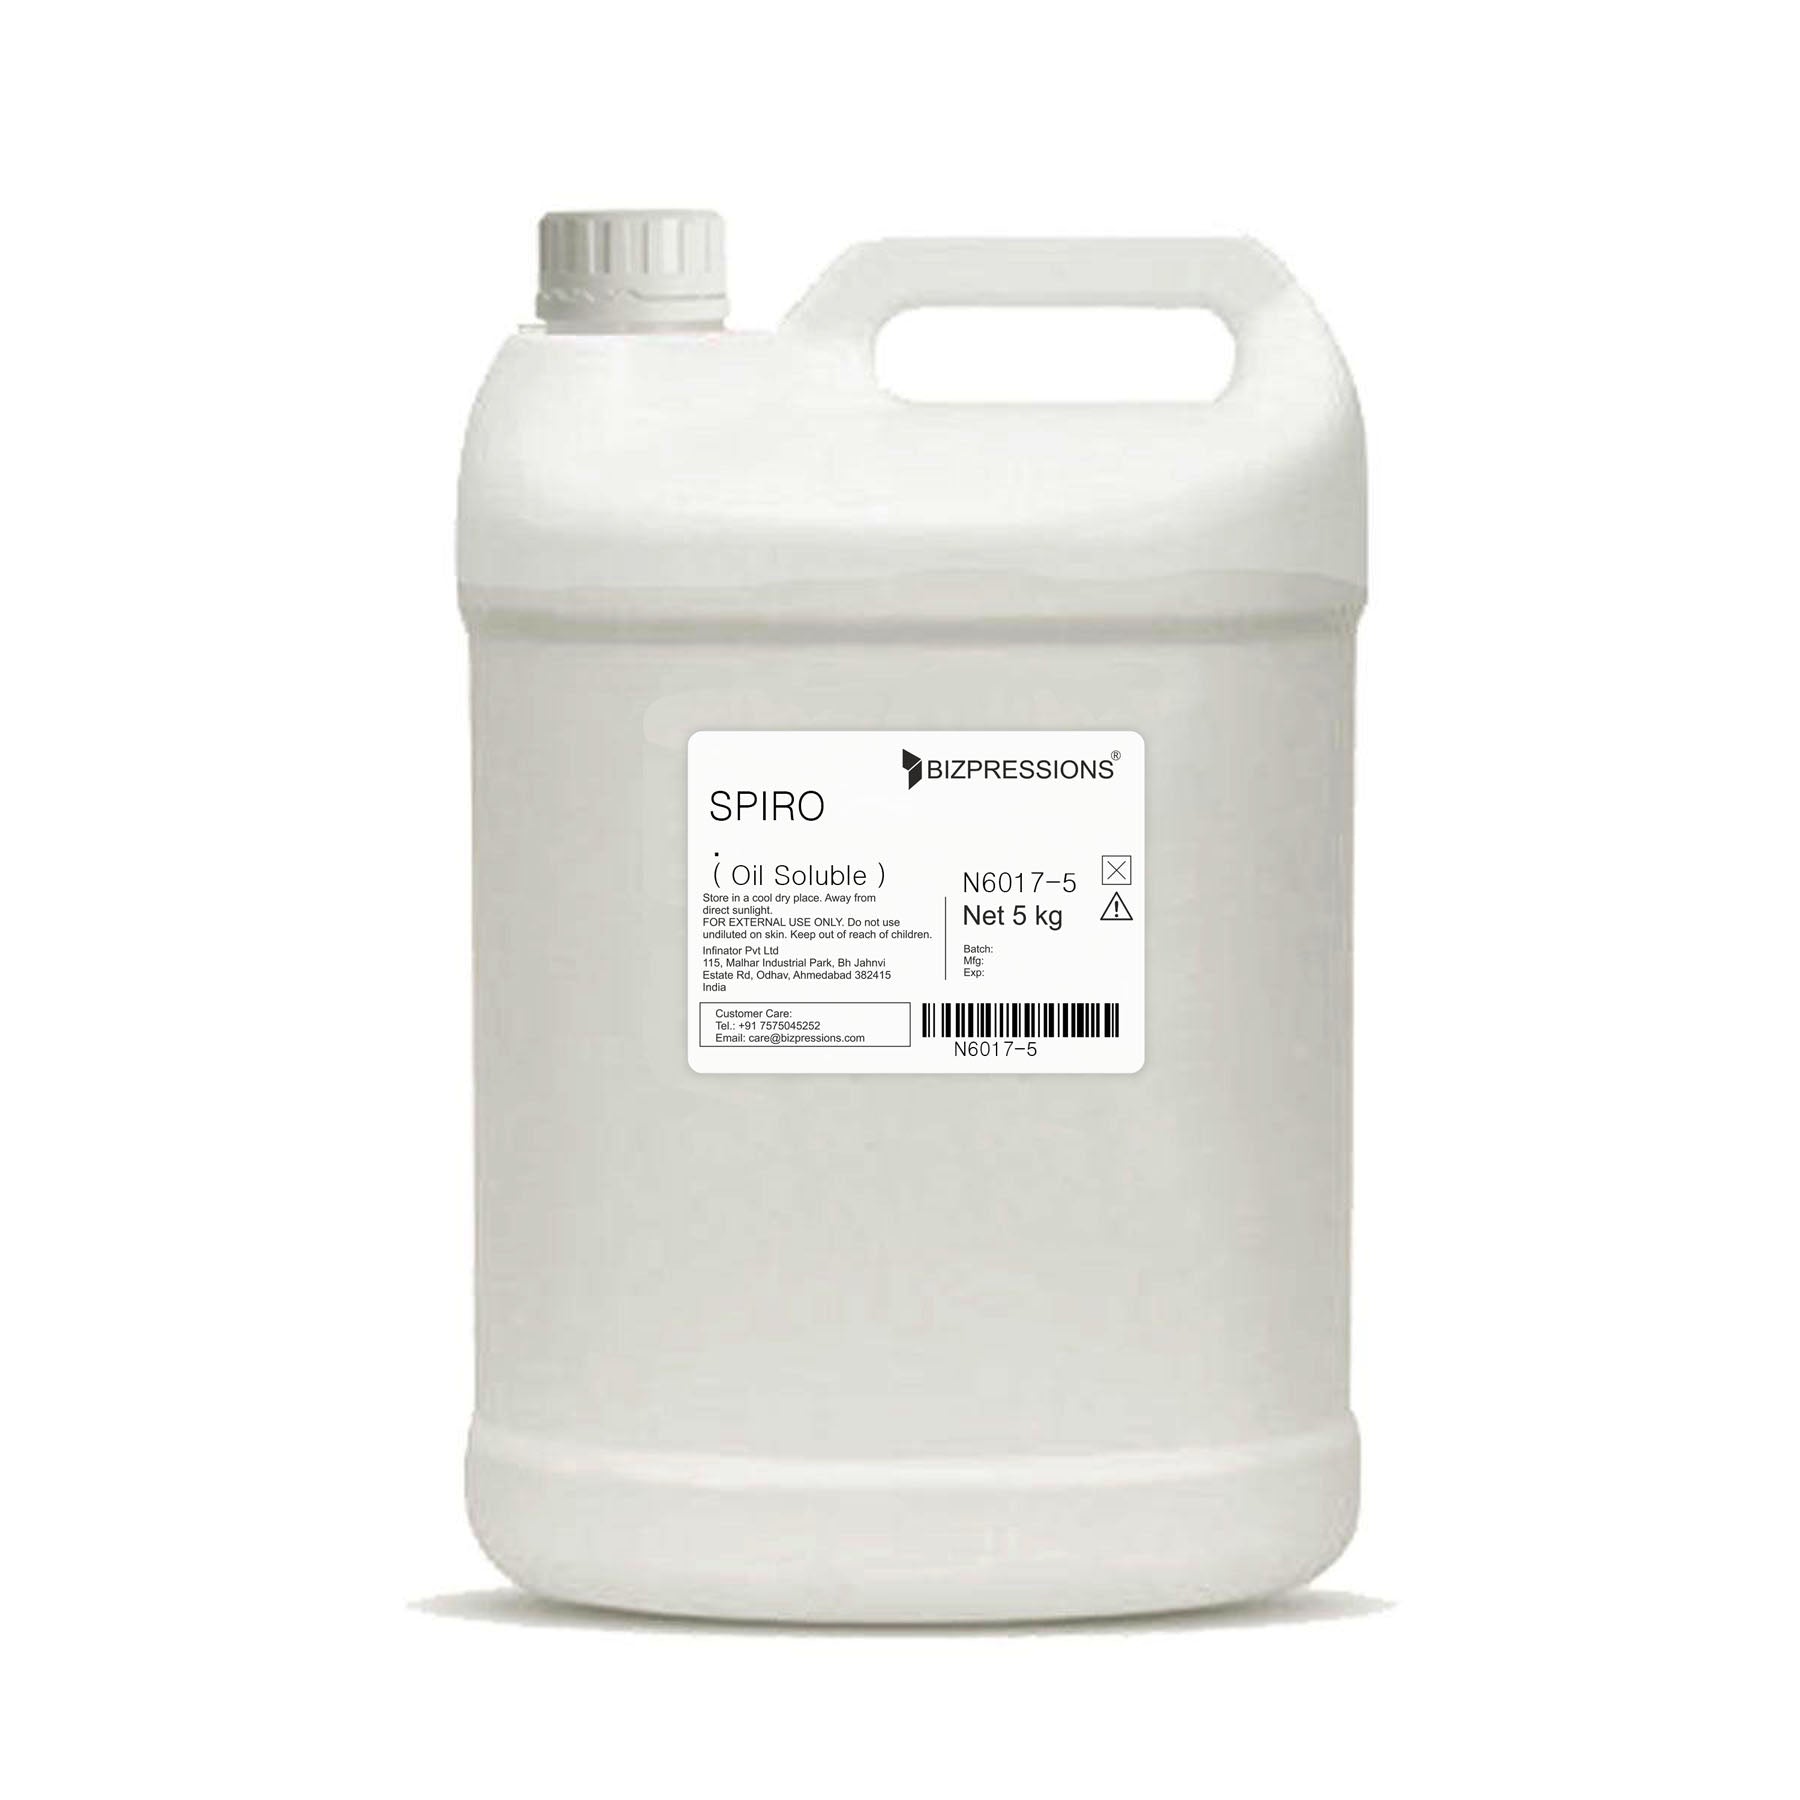 SPIRO - Fragrance ( Oil Soluble ) - 5 kg